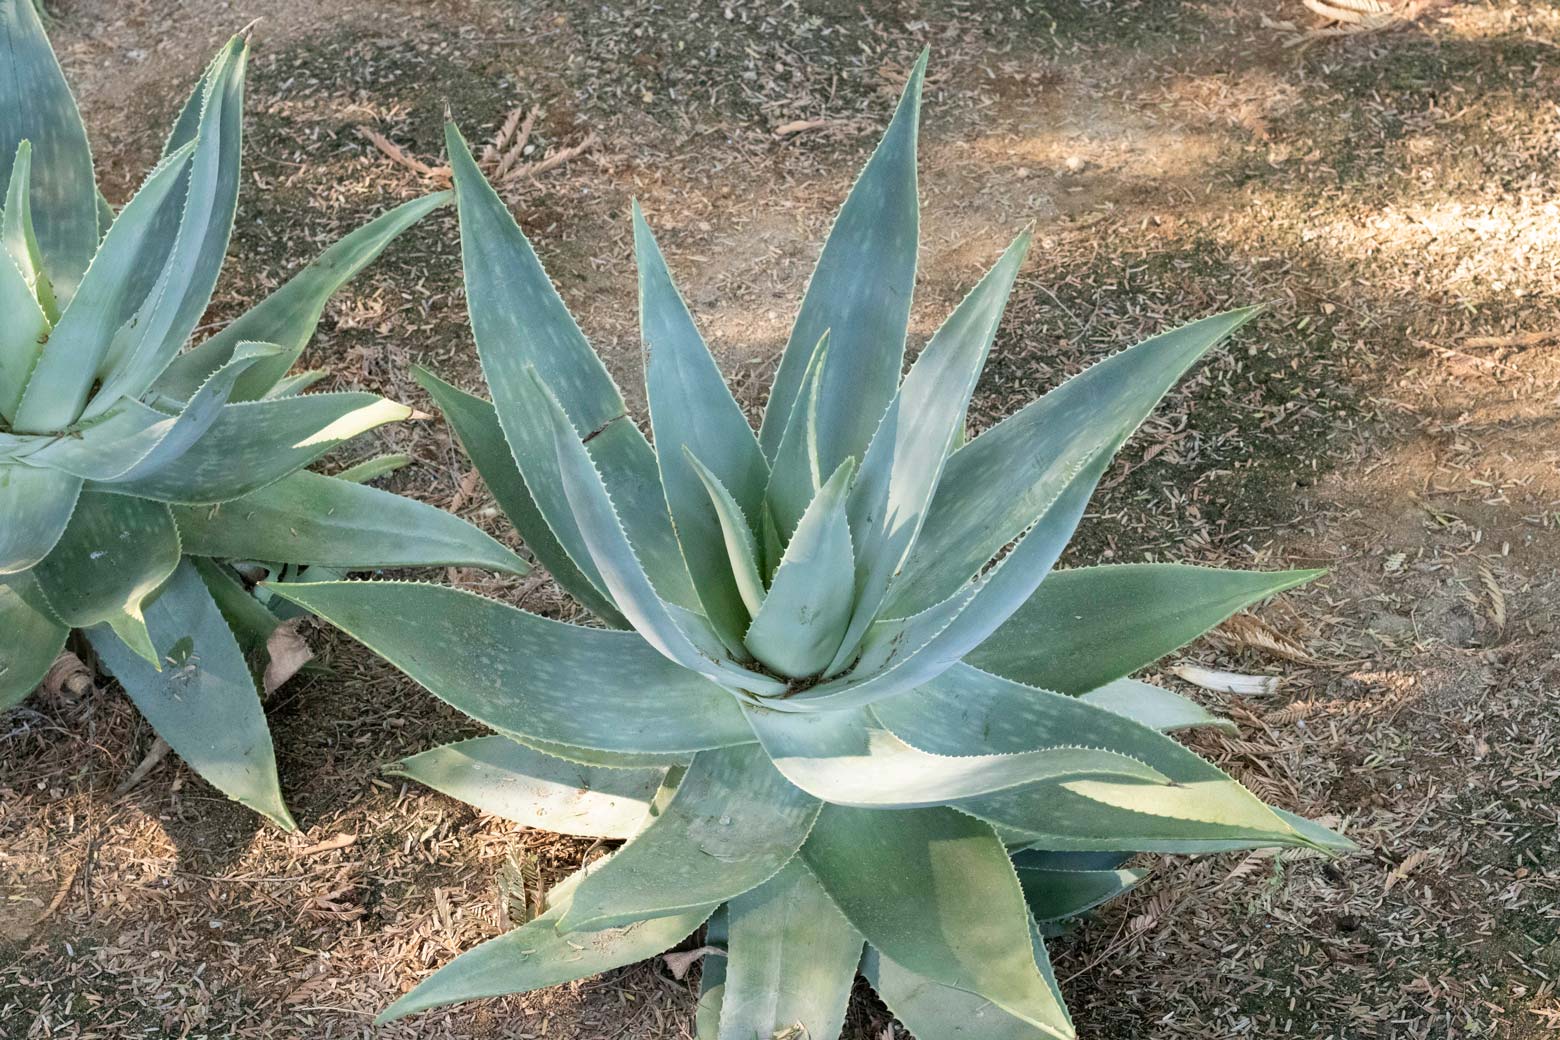 A single Ghose Aloe plant.